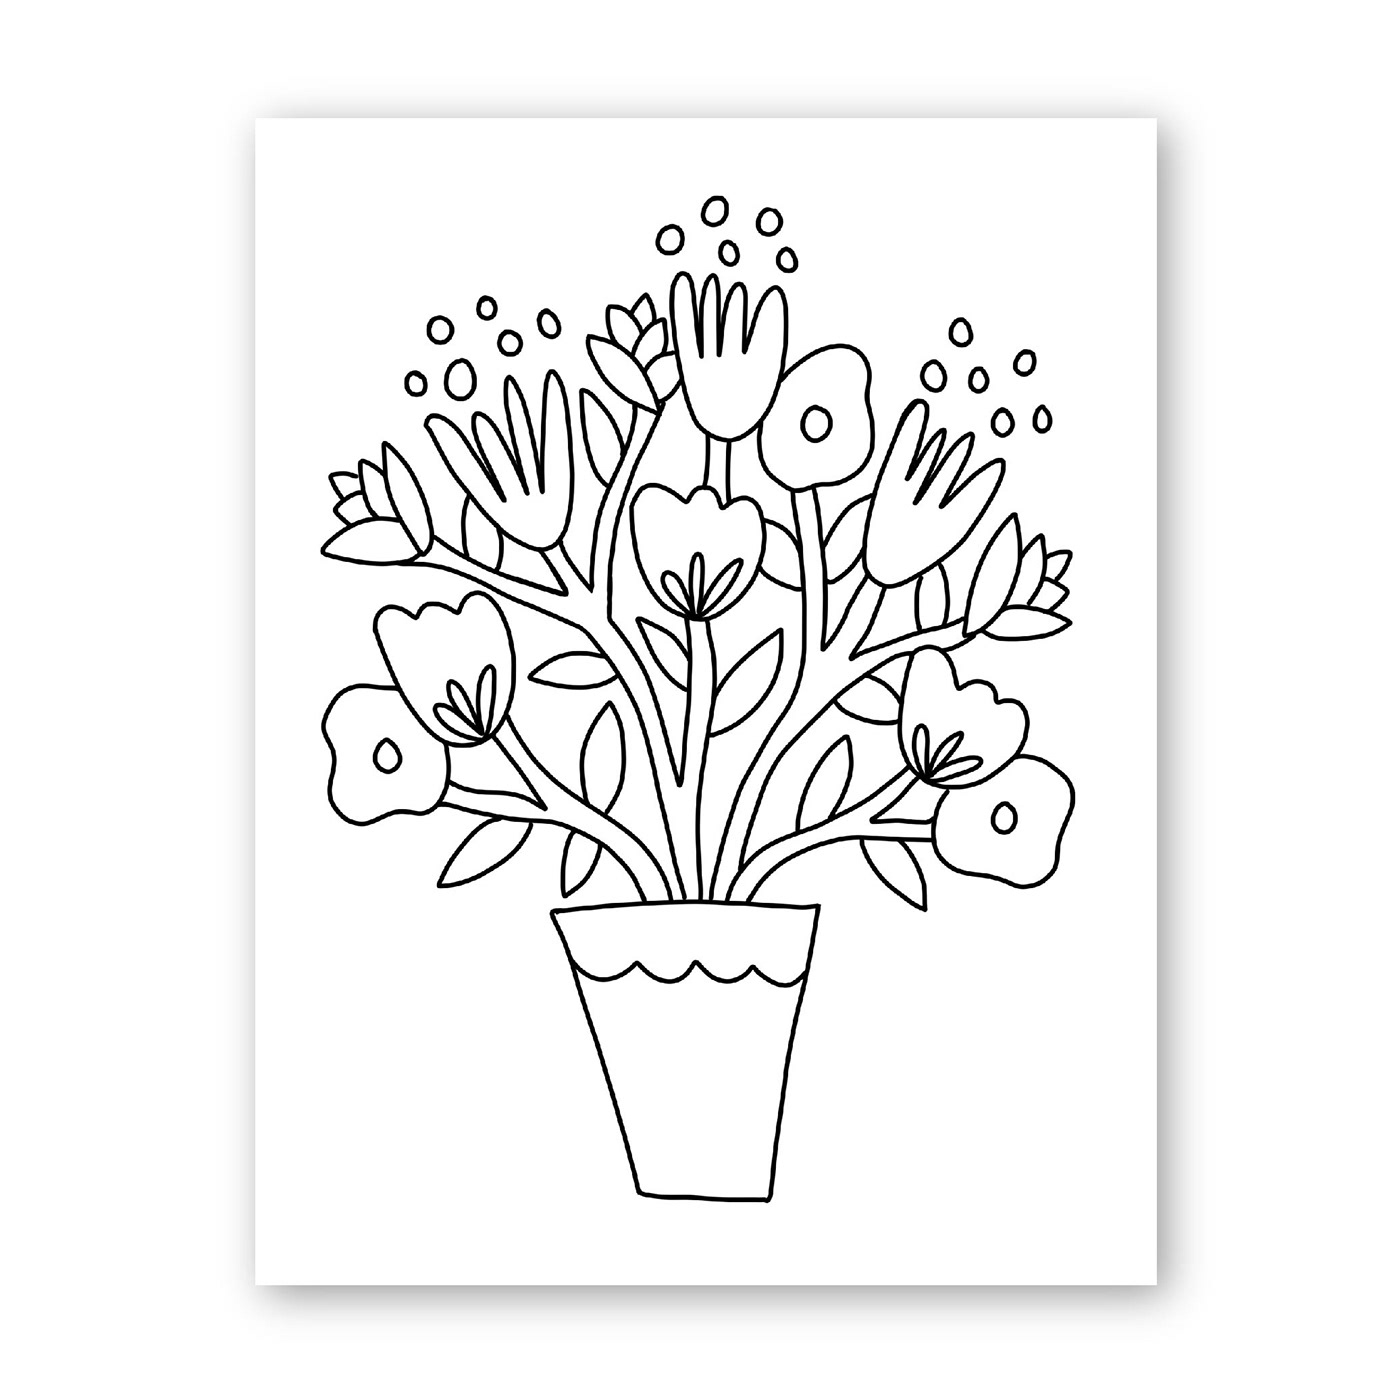 athomecraftproject card cardcrafts cards crafts   DigitalIllustration doodle moms mothersday